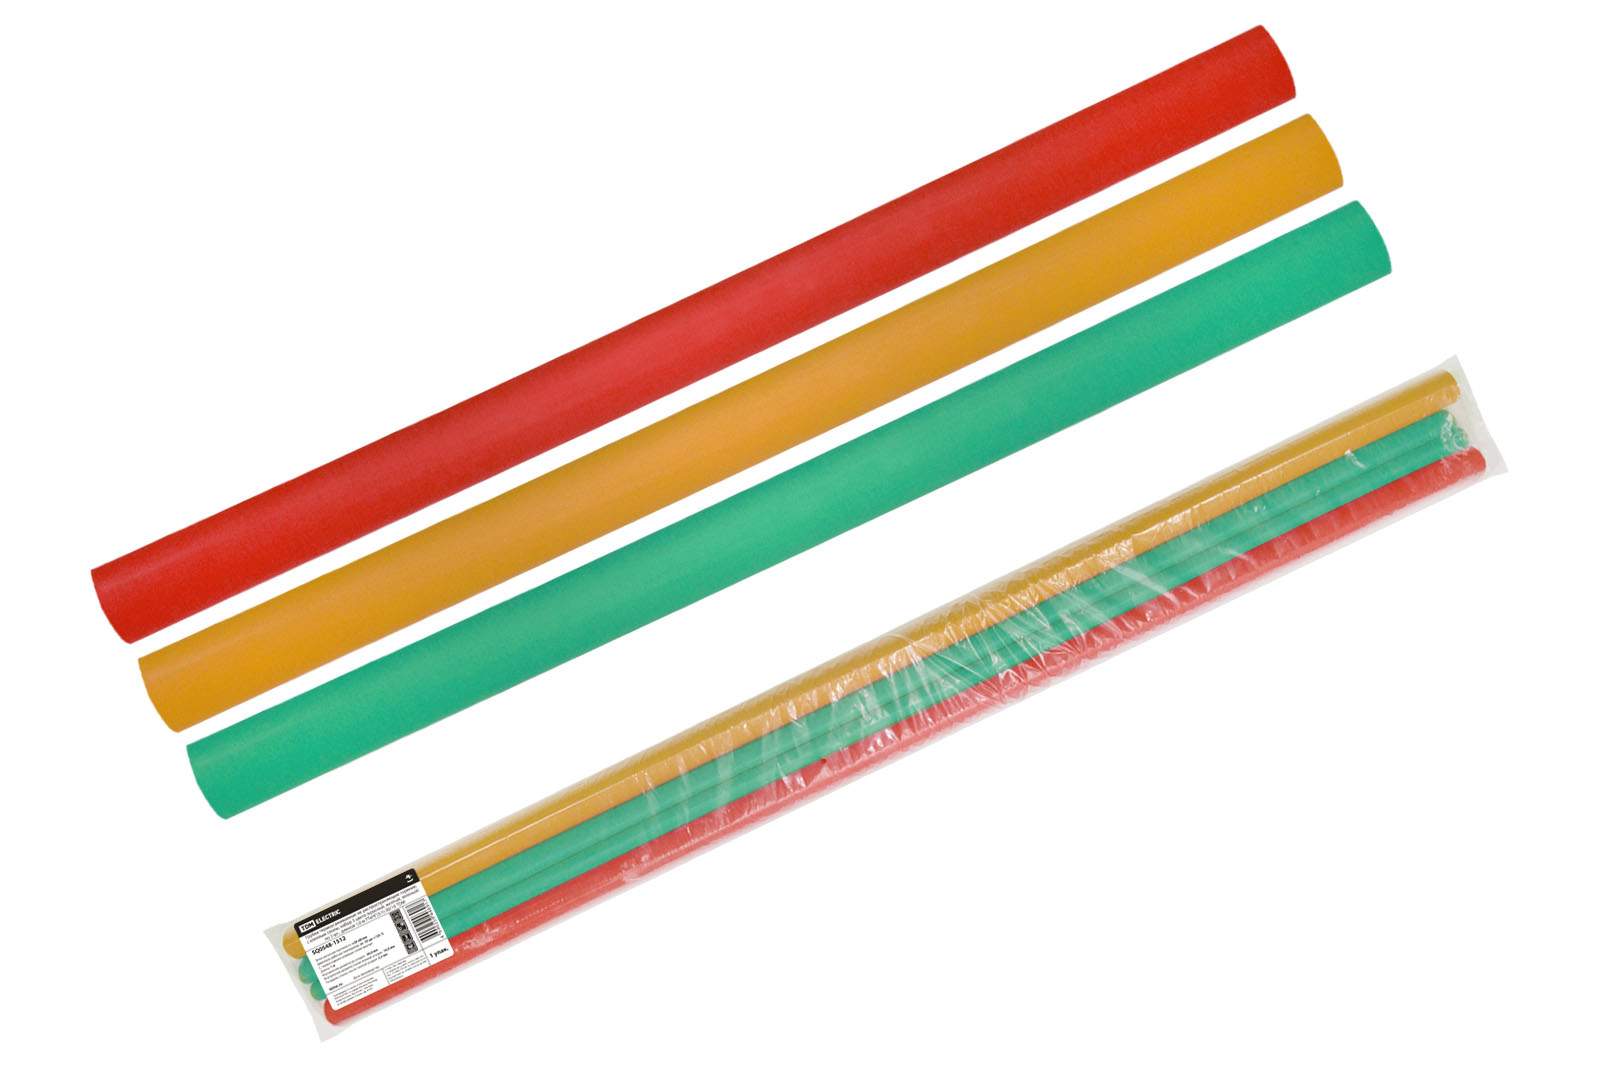 трубки термоусаживаемые, клеевые, набор 3 цвета по 3 шт. тткнг(3:1)-30/10 tdm от BTSprom.by